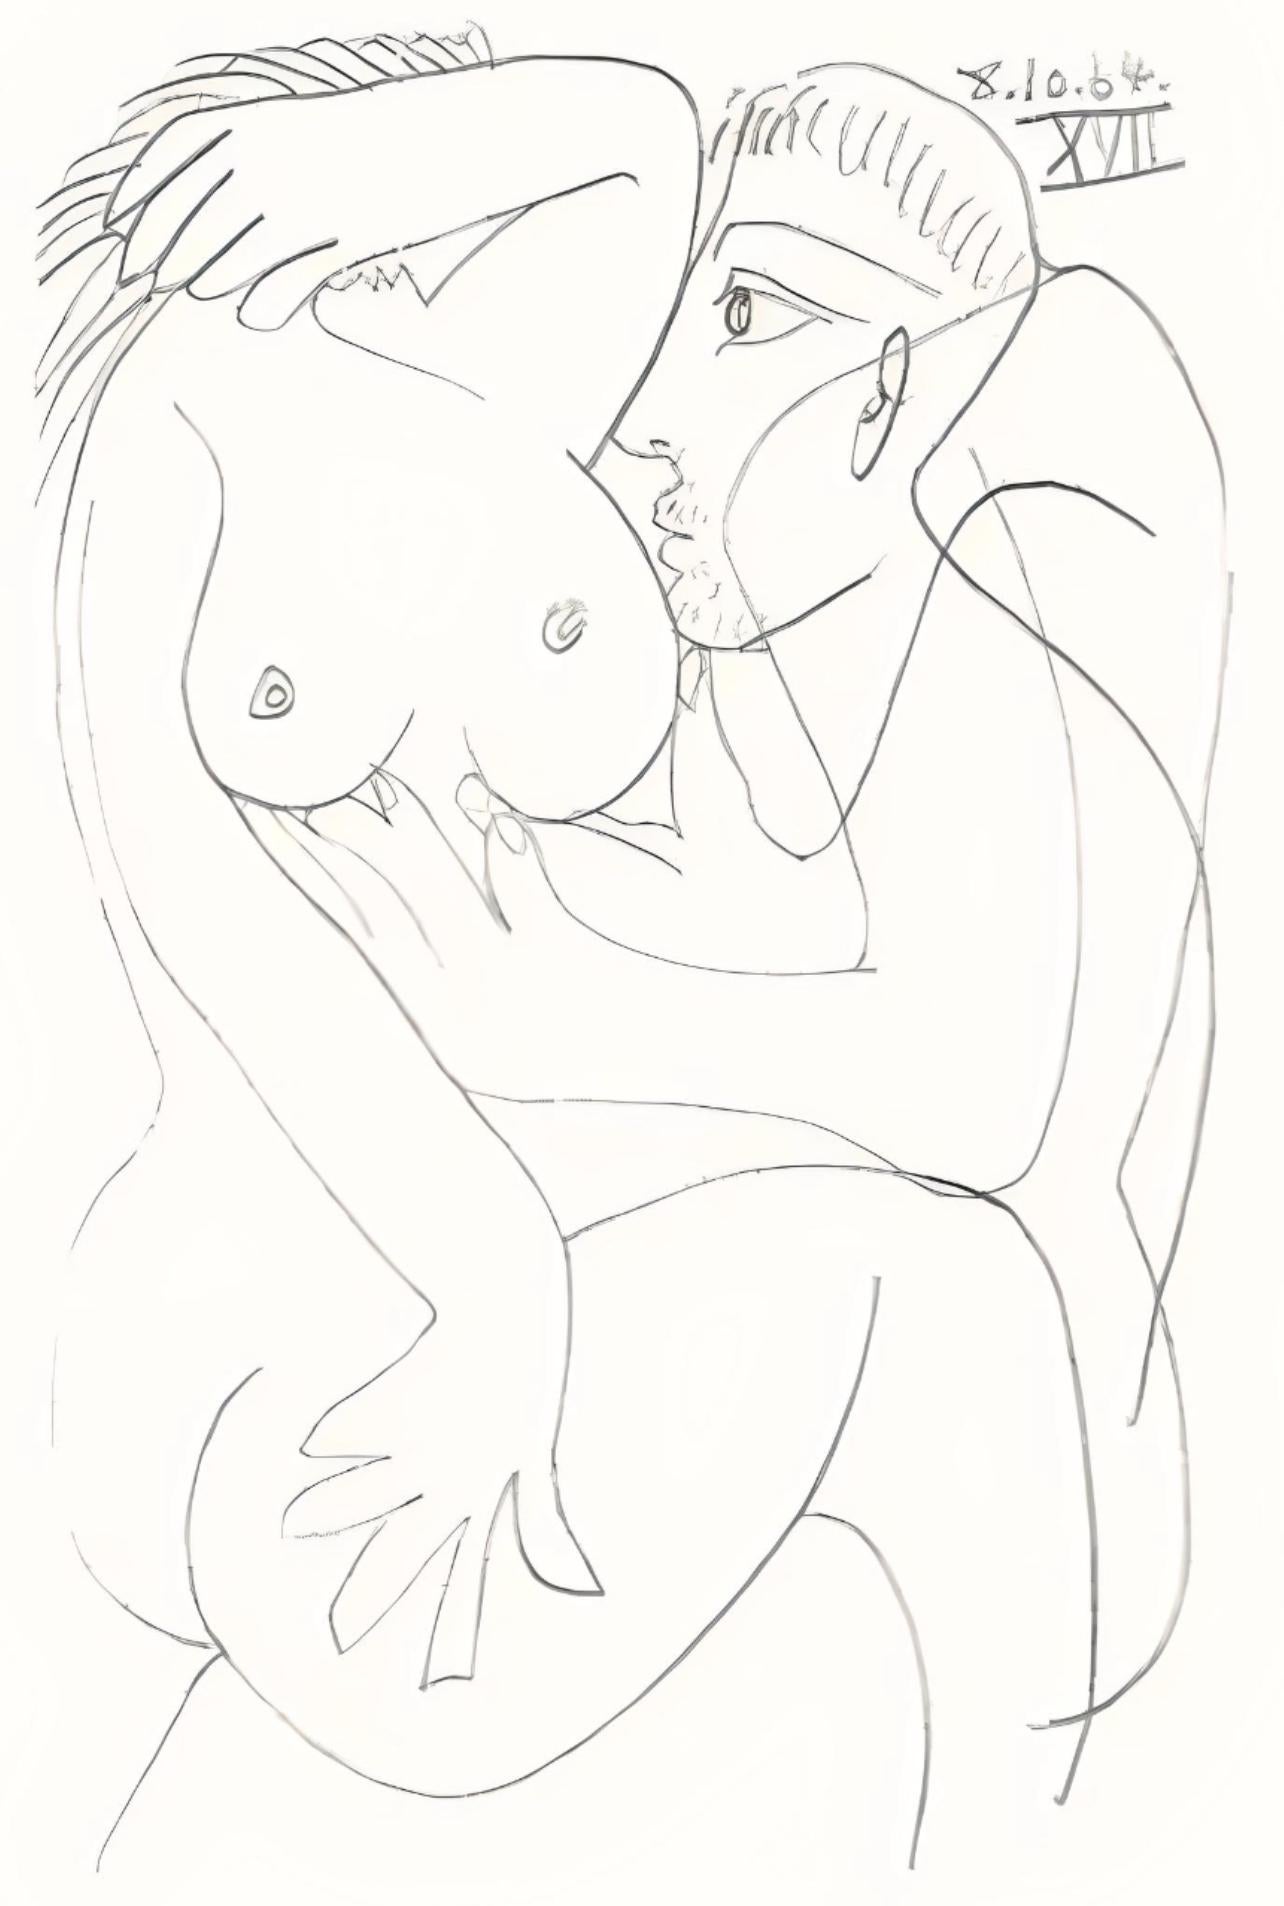 Pablo Picasso Landscape Print - Picasso, Le Goût du Bonheur 66 (Cramer 148; Bloch 2013) (after)